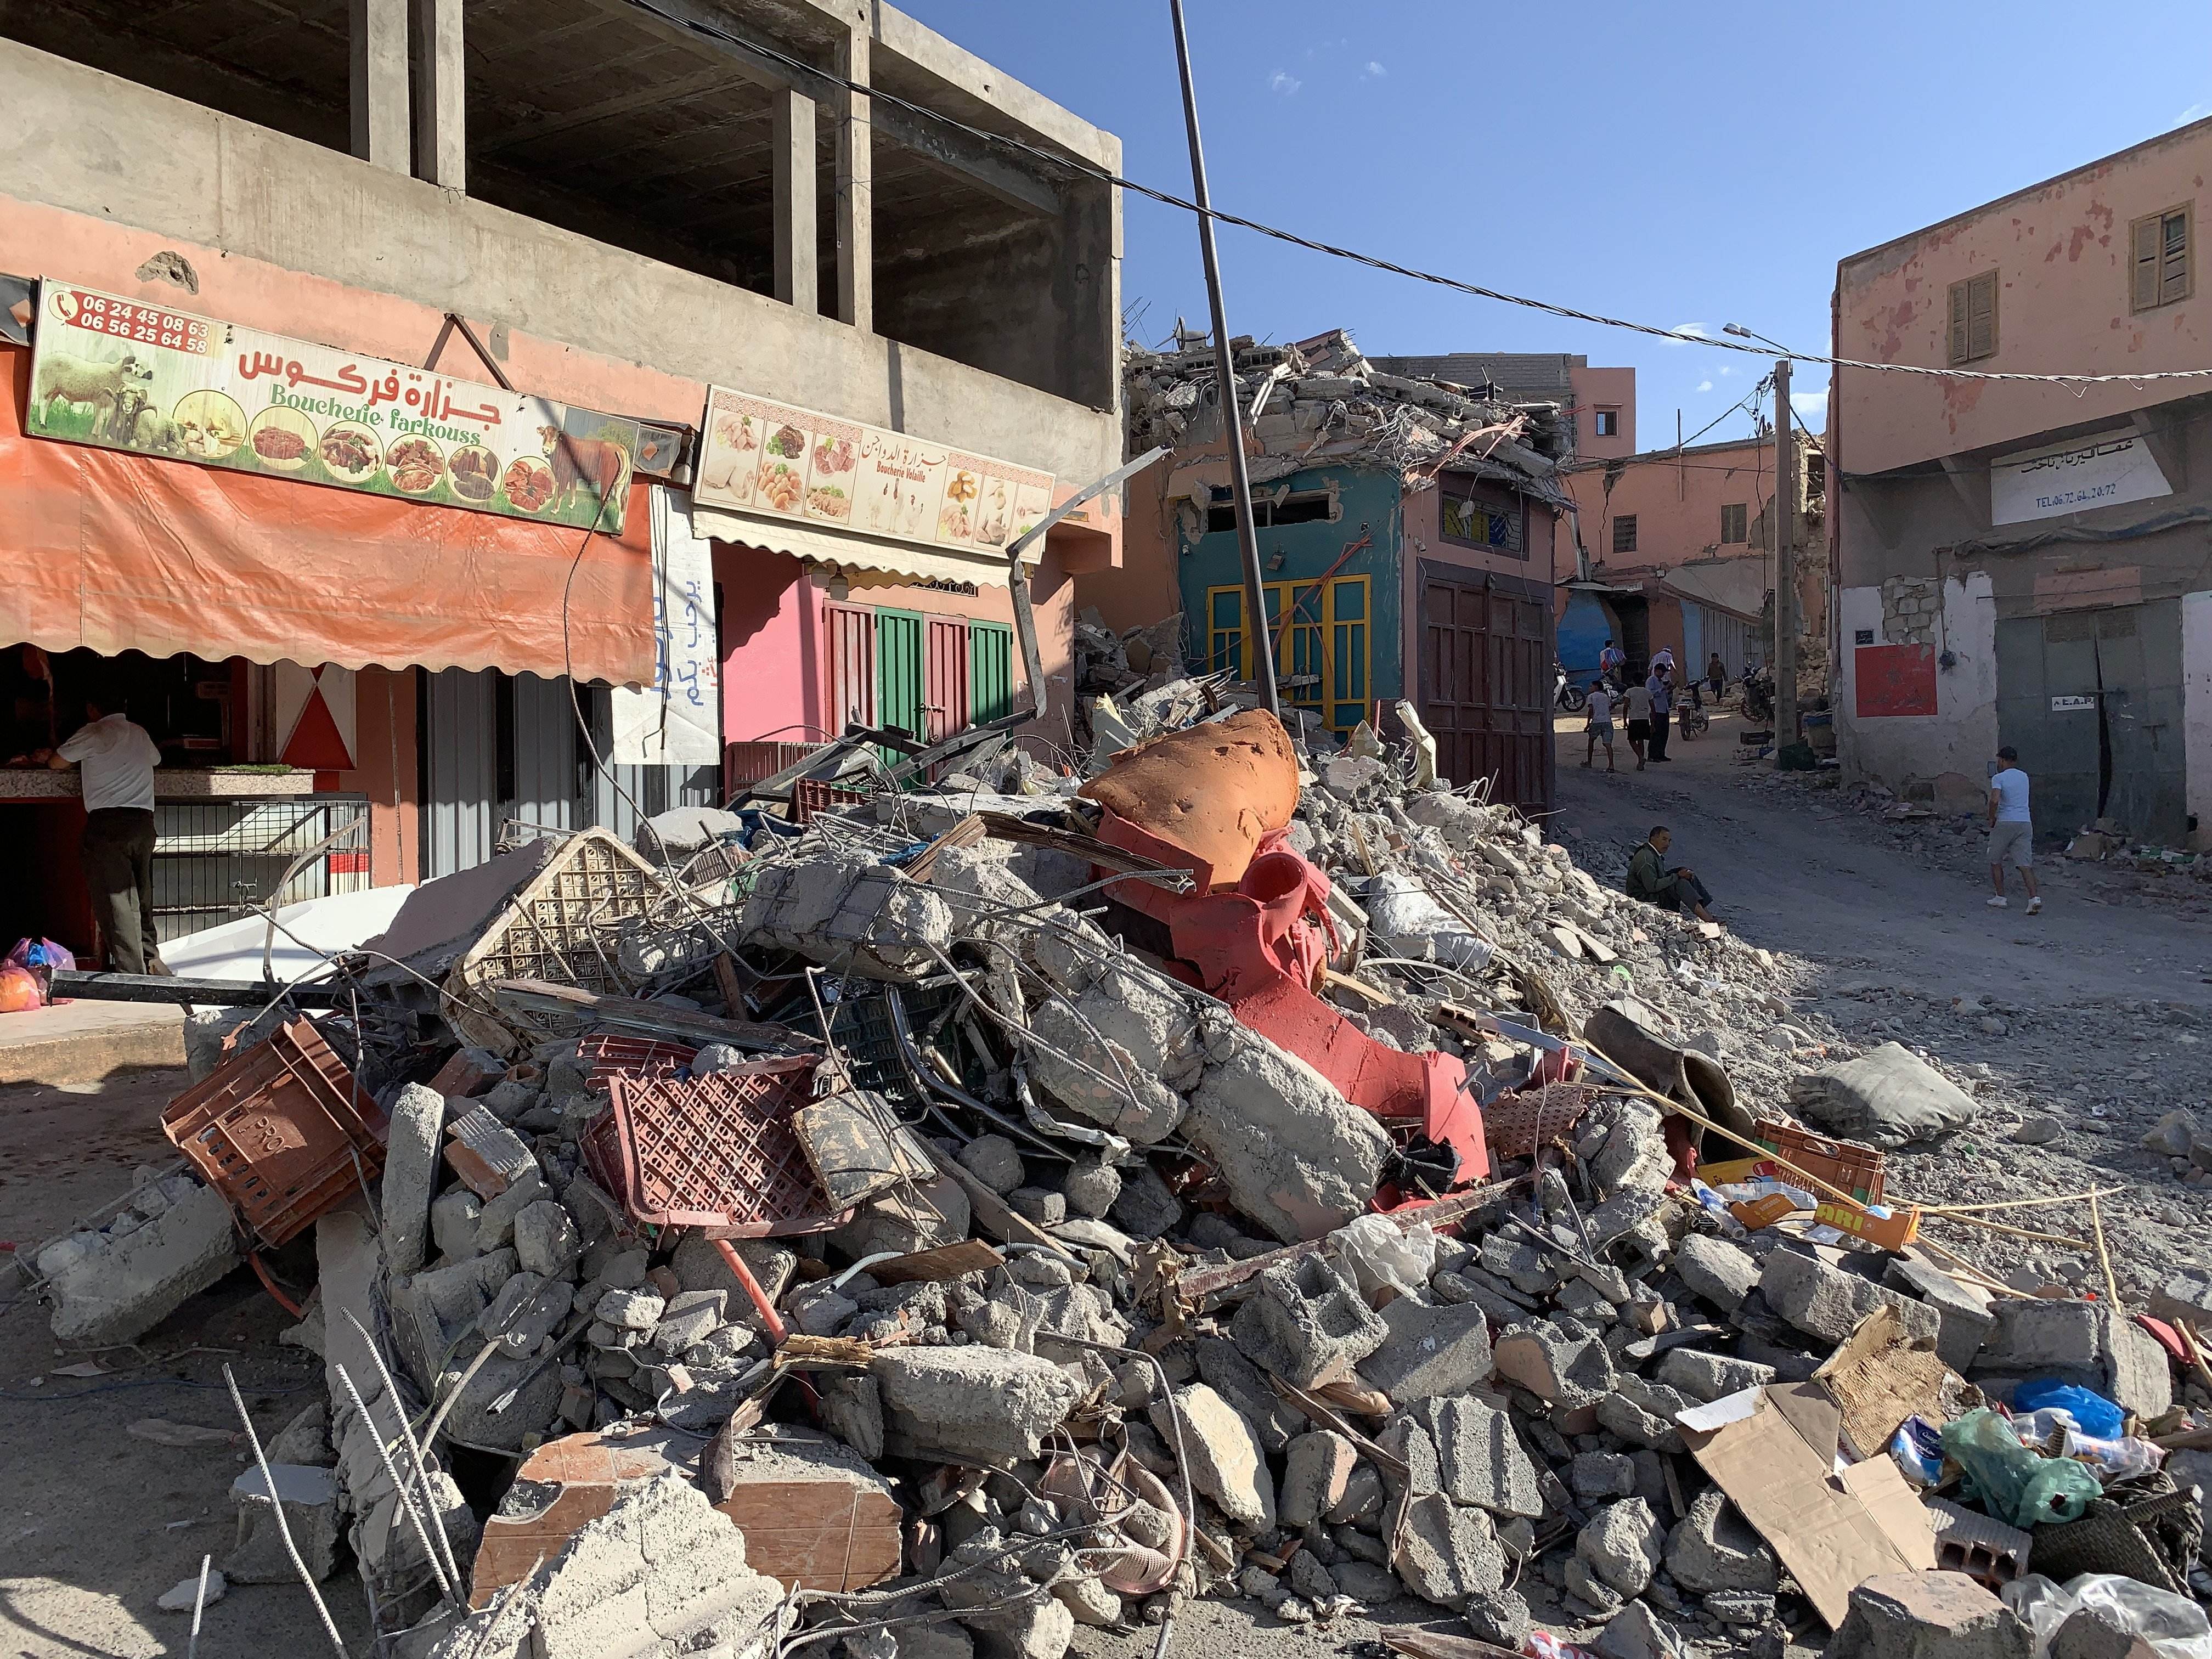 Amizmiz: rescates, oración y llantos en el corazón del terremoto de Marruecos